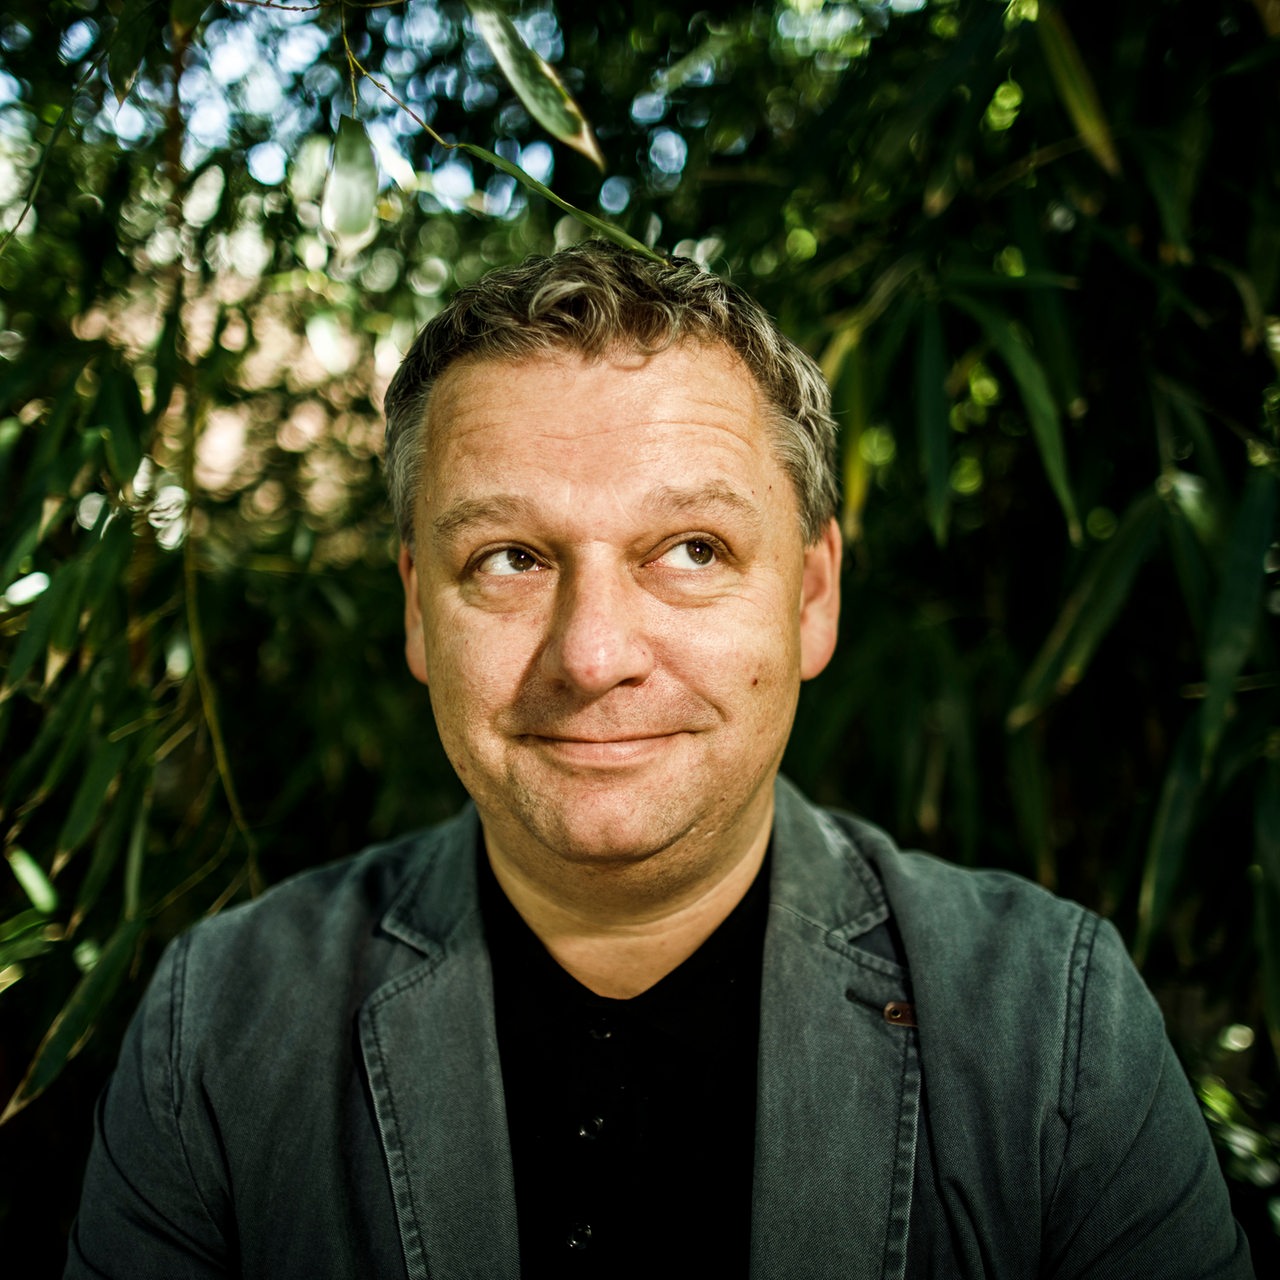 Torsten Rohde, Schriftsteller, schaut nach einem Interview zu dem Fotografen